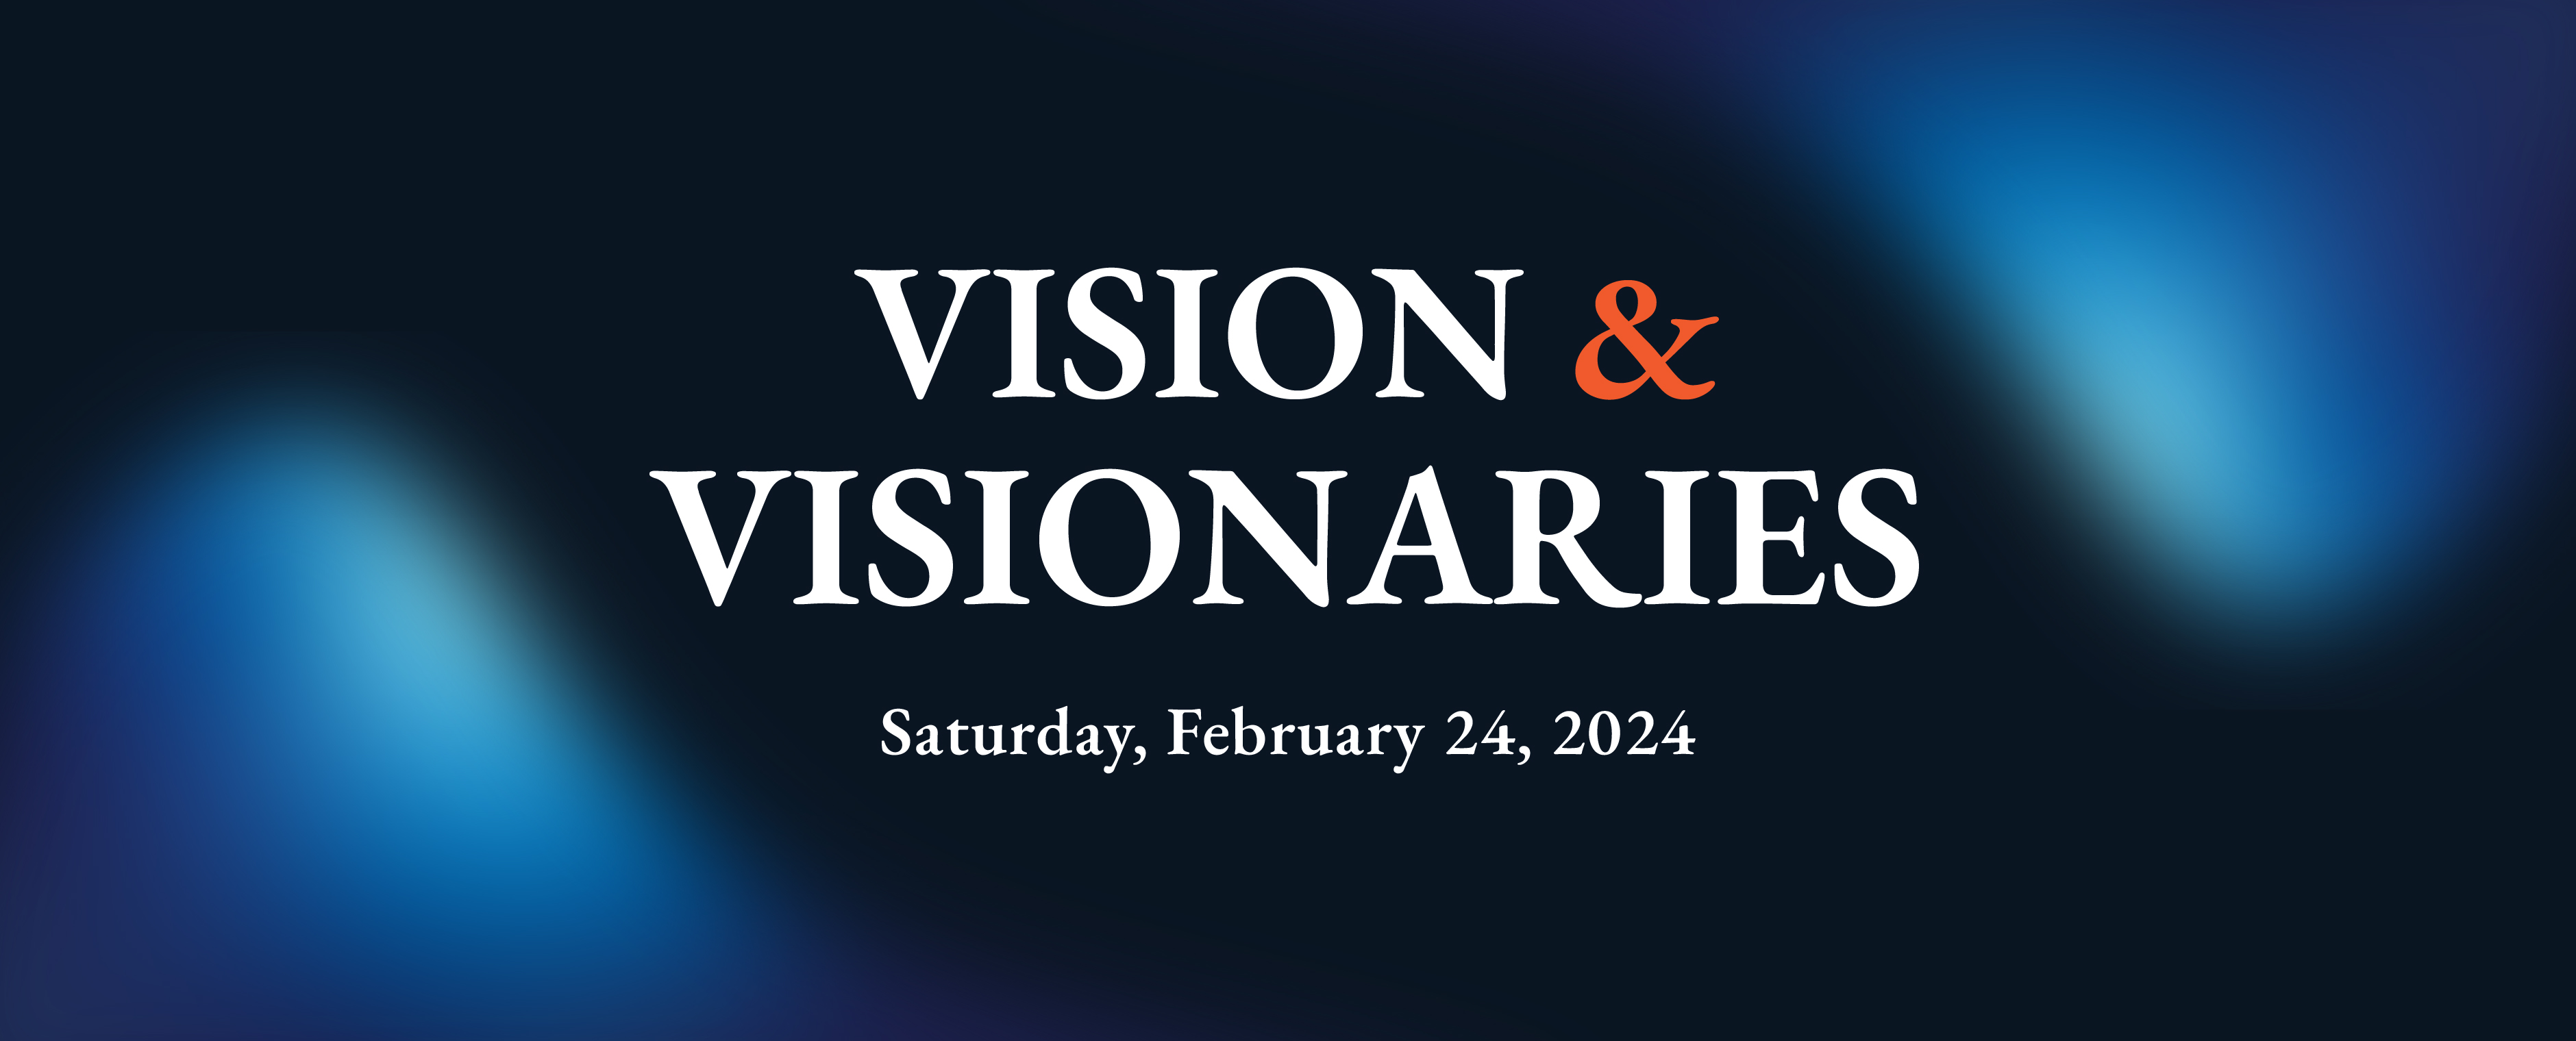 Vision & Visionaries- Saturday, Feb 24, 2024